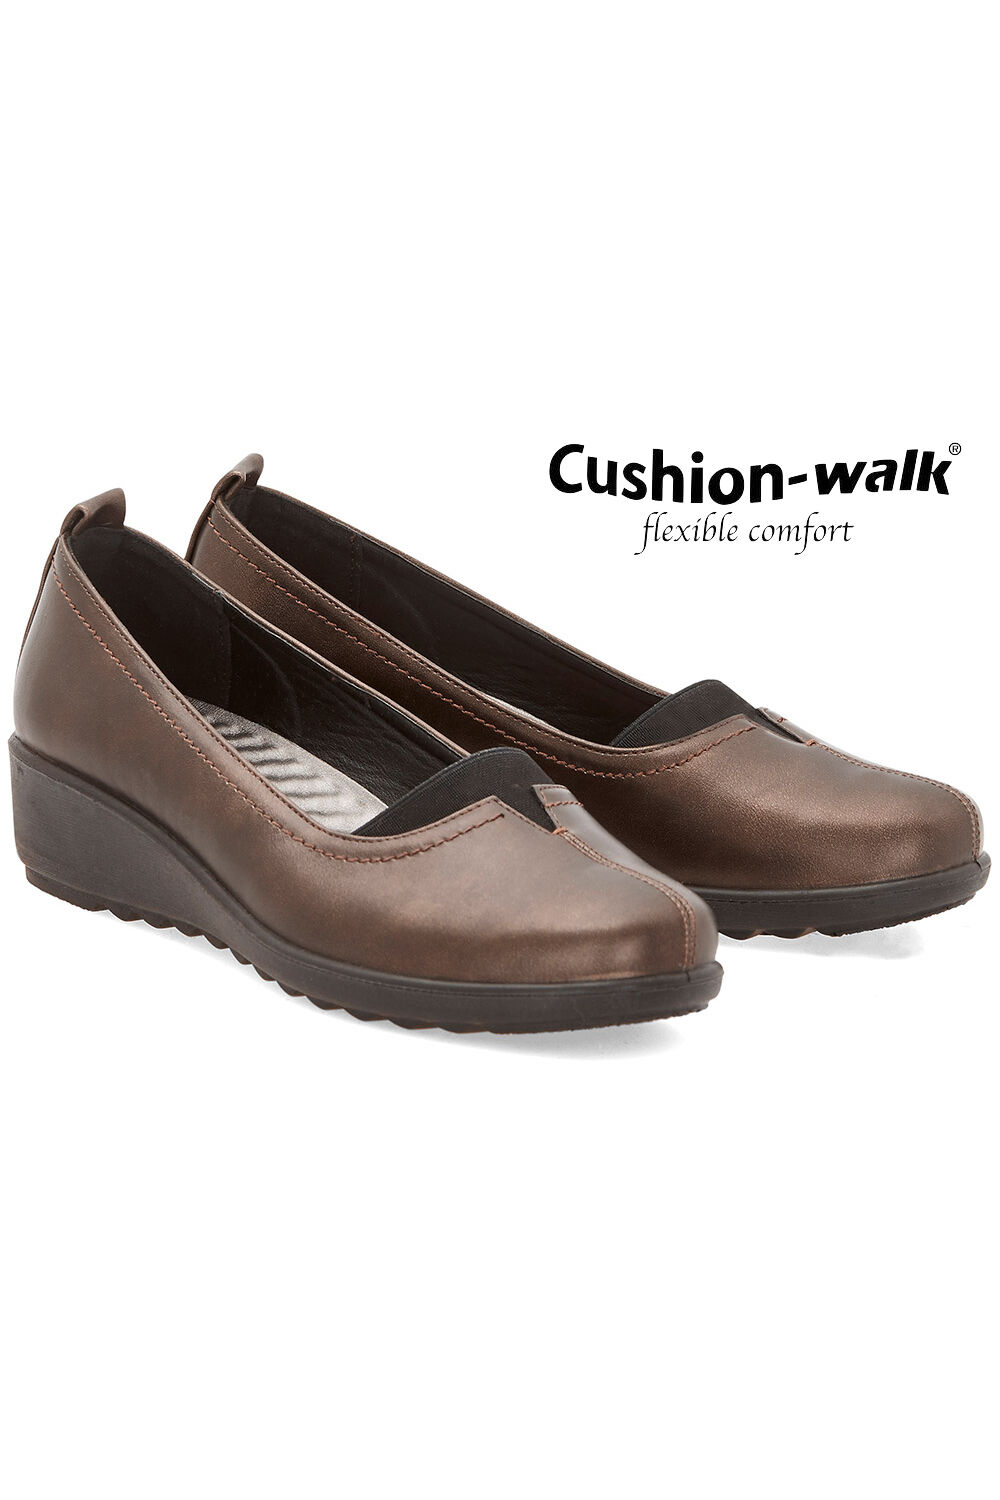 cushion walk shoes uk